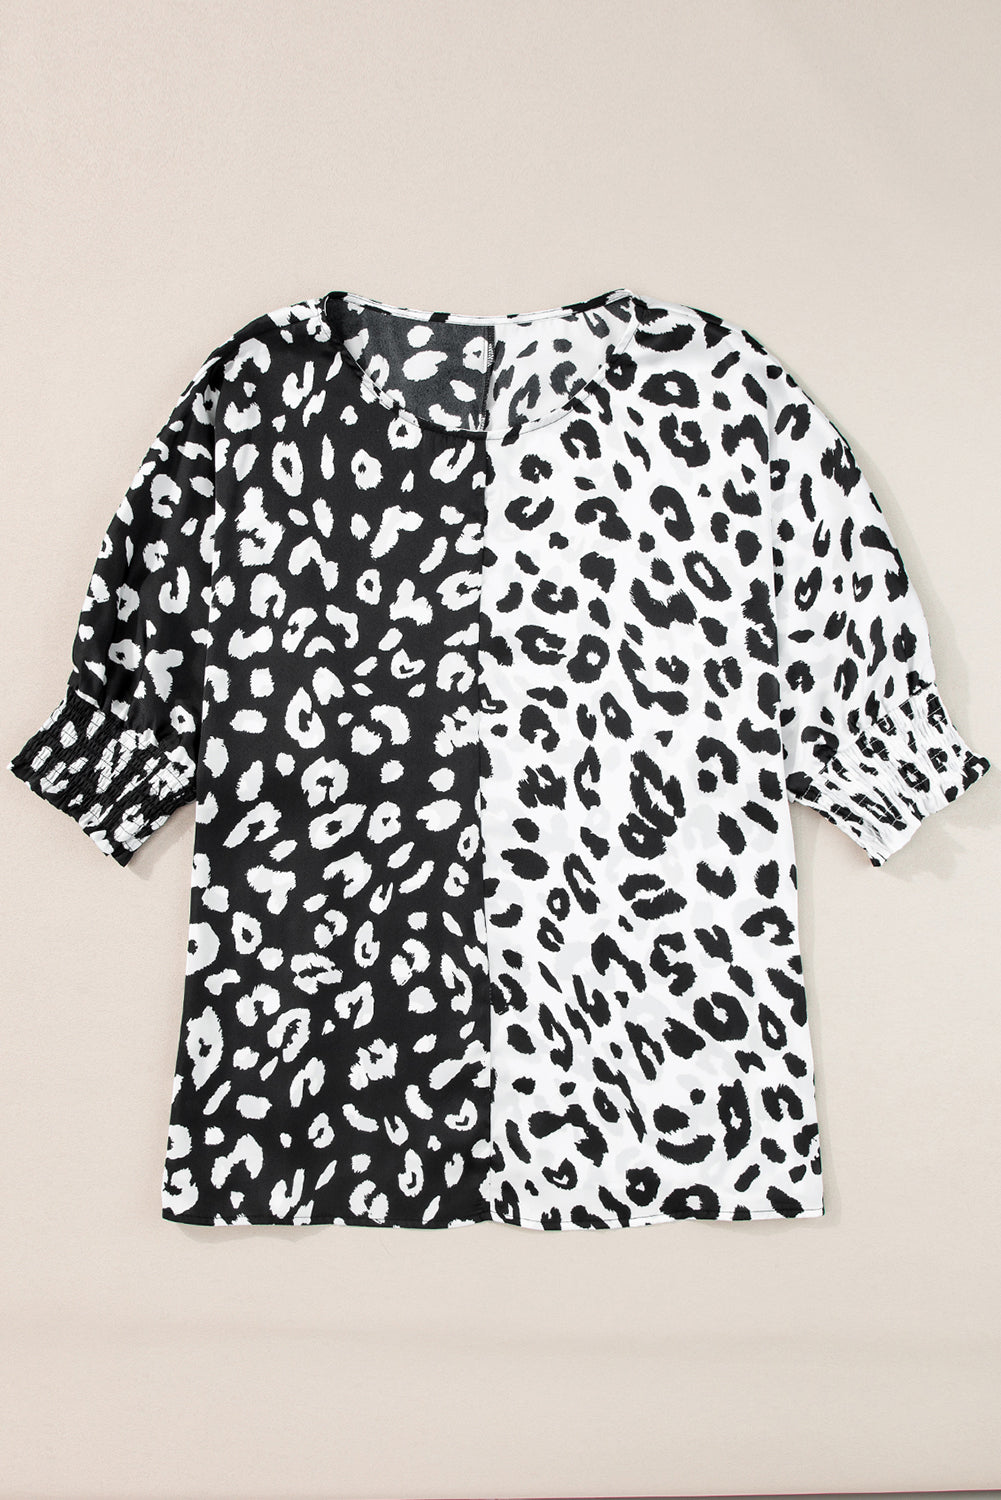 Crna bluza do pola rukava s leopard kontrastom veće veličine